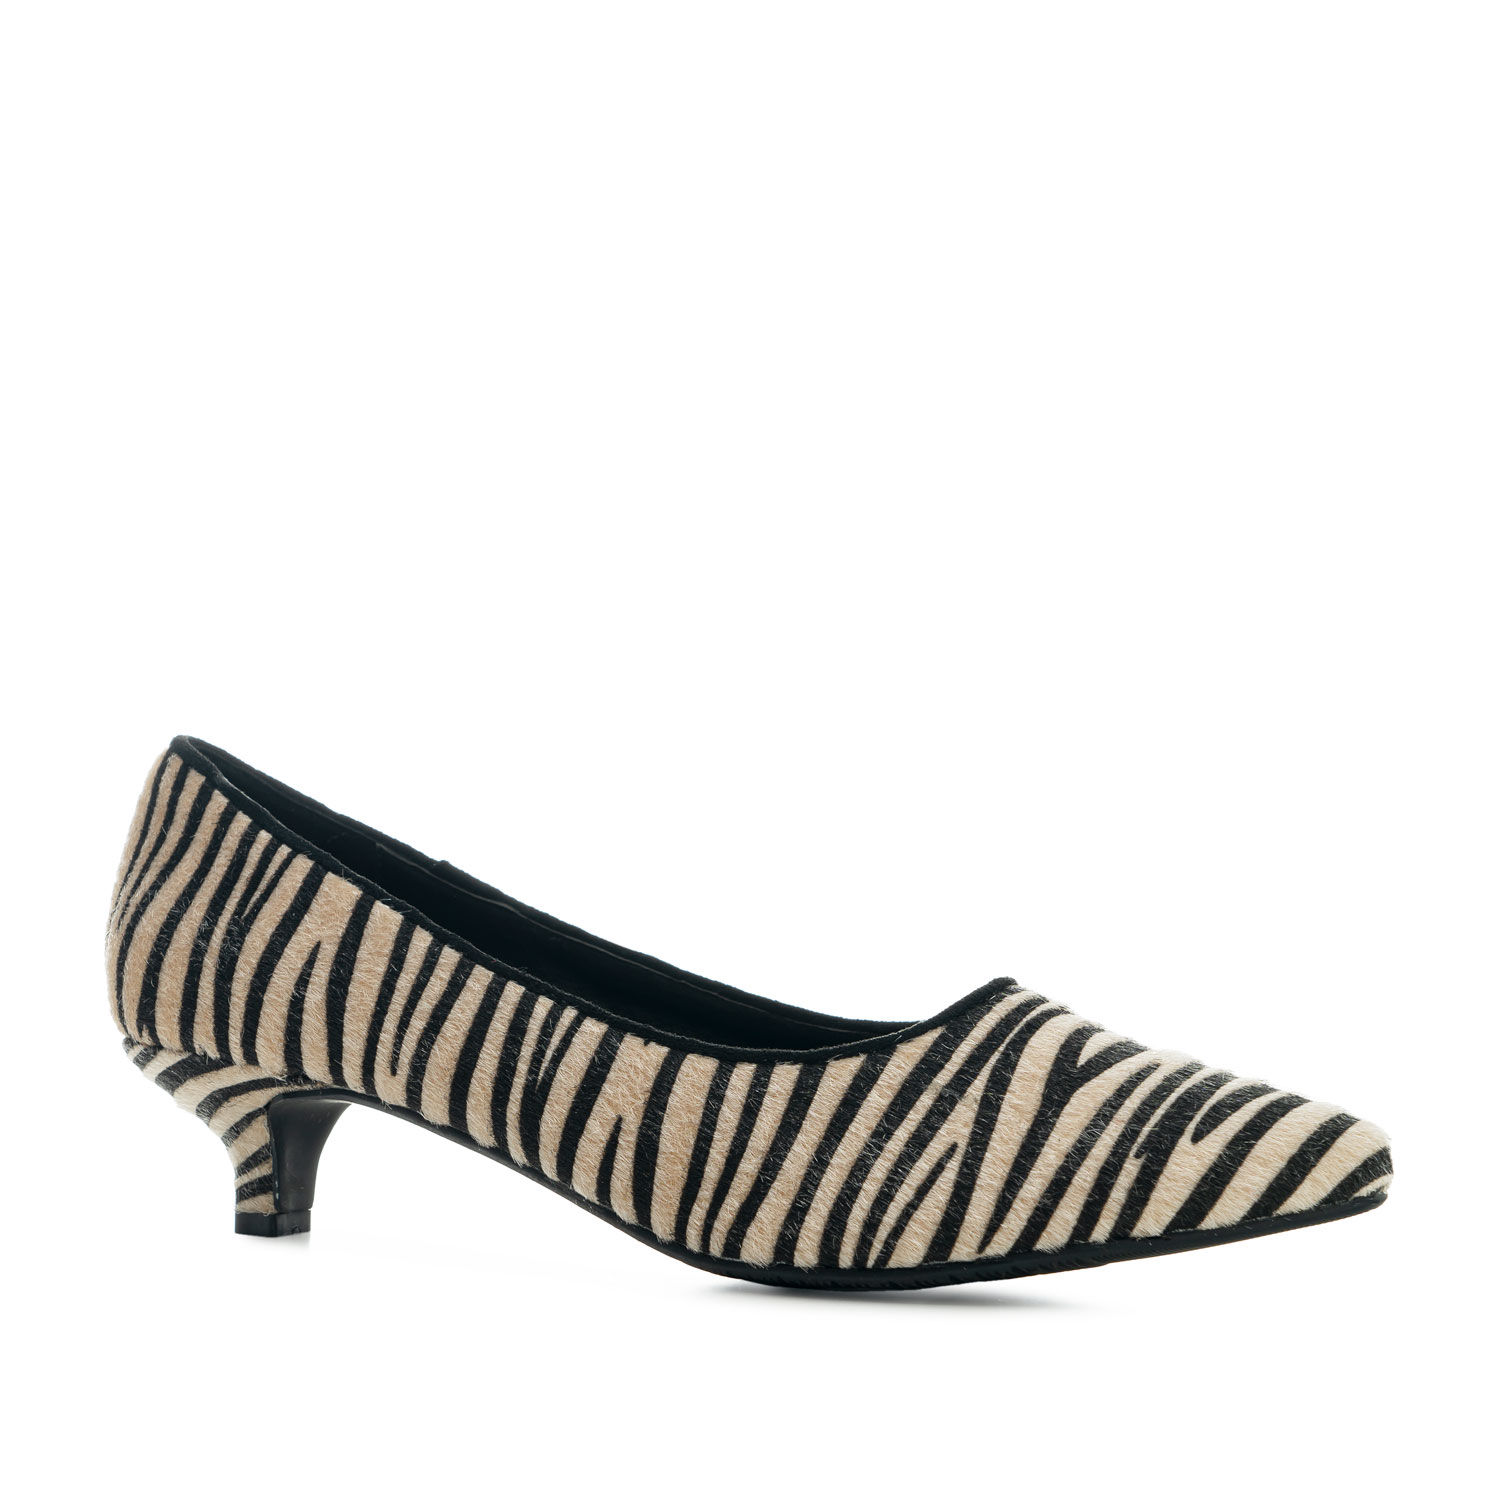 Kitten Heel Shoes in Zebra Fur - New 